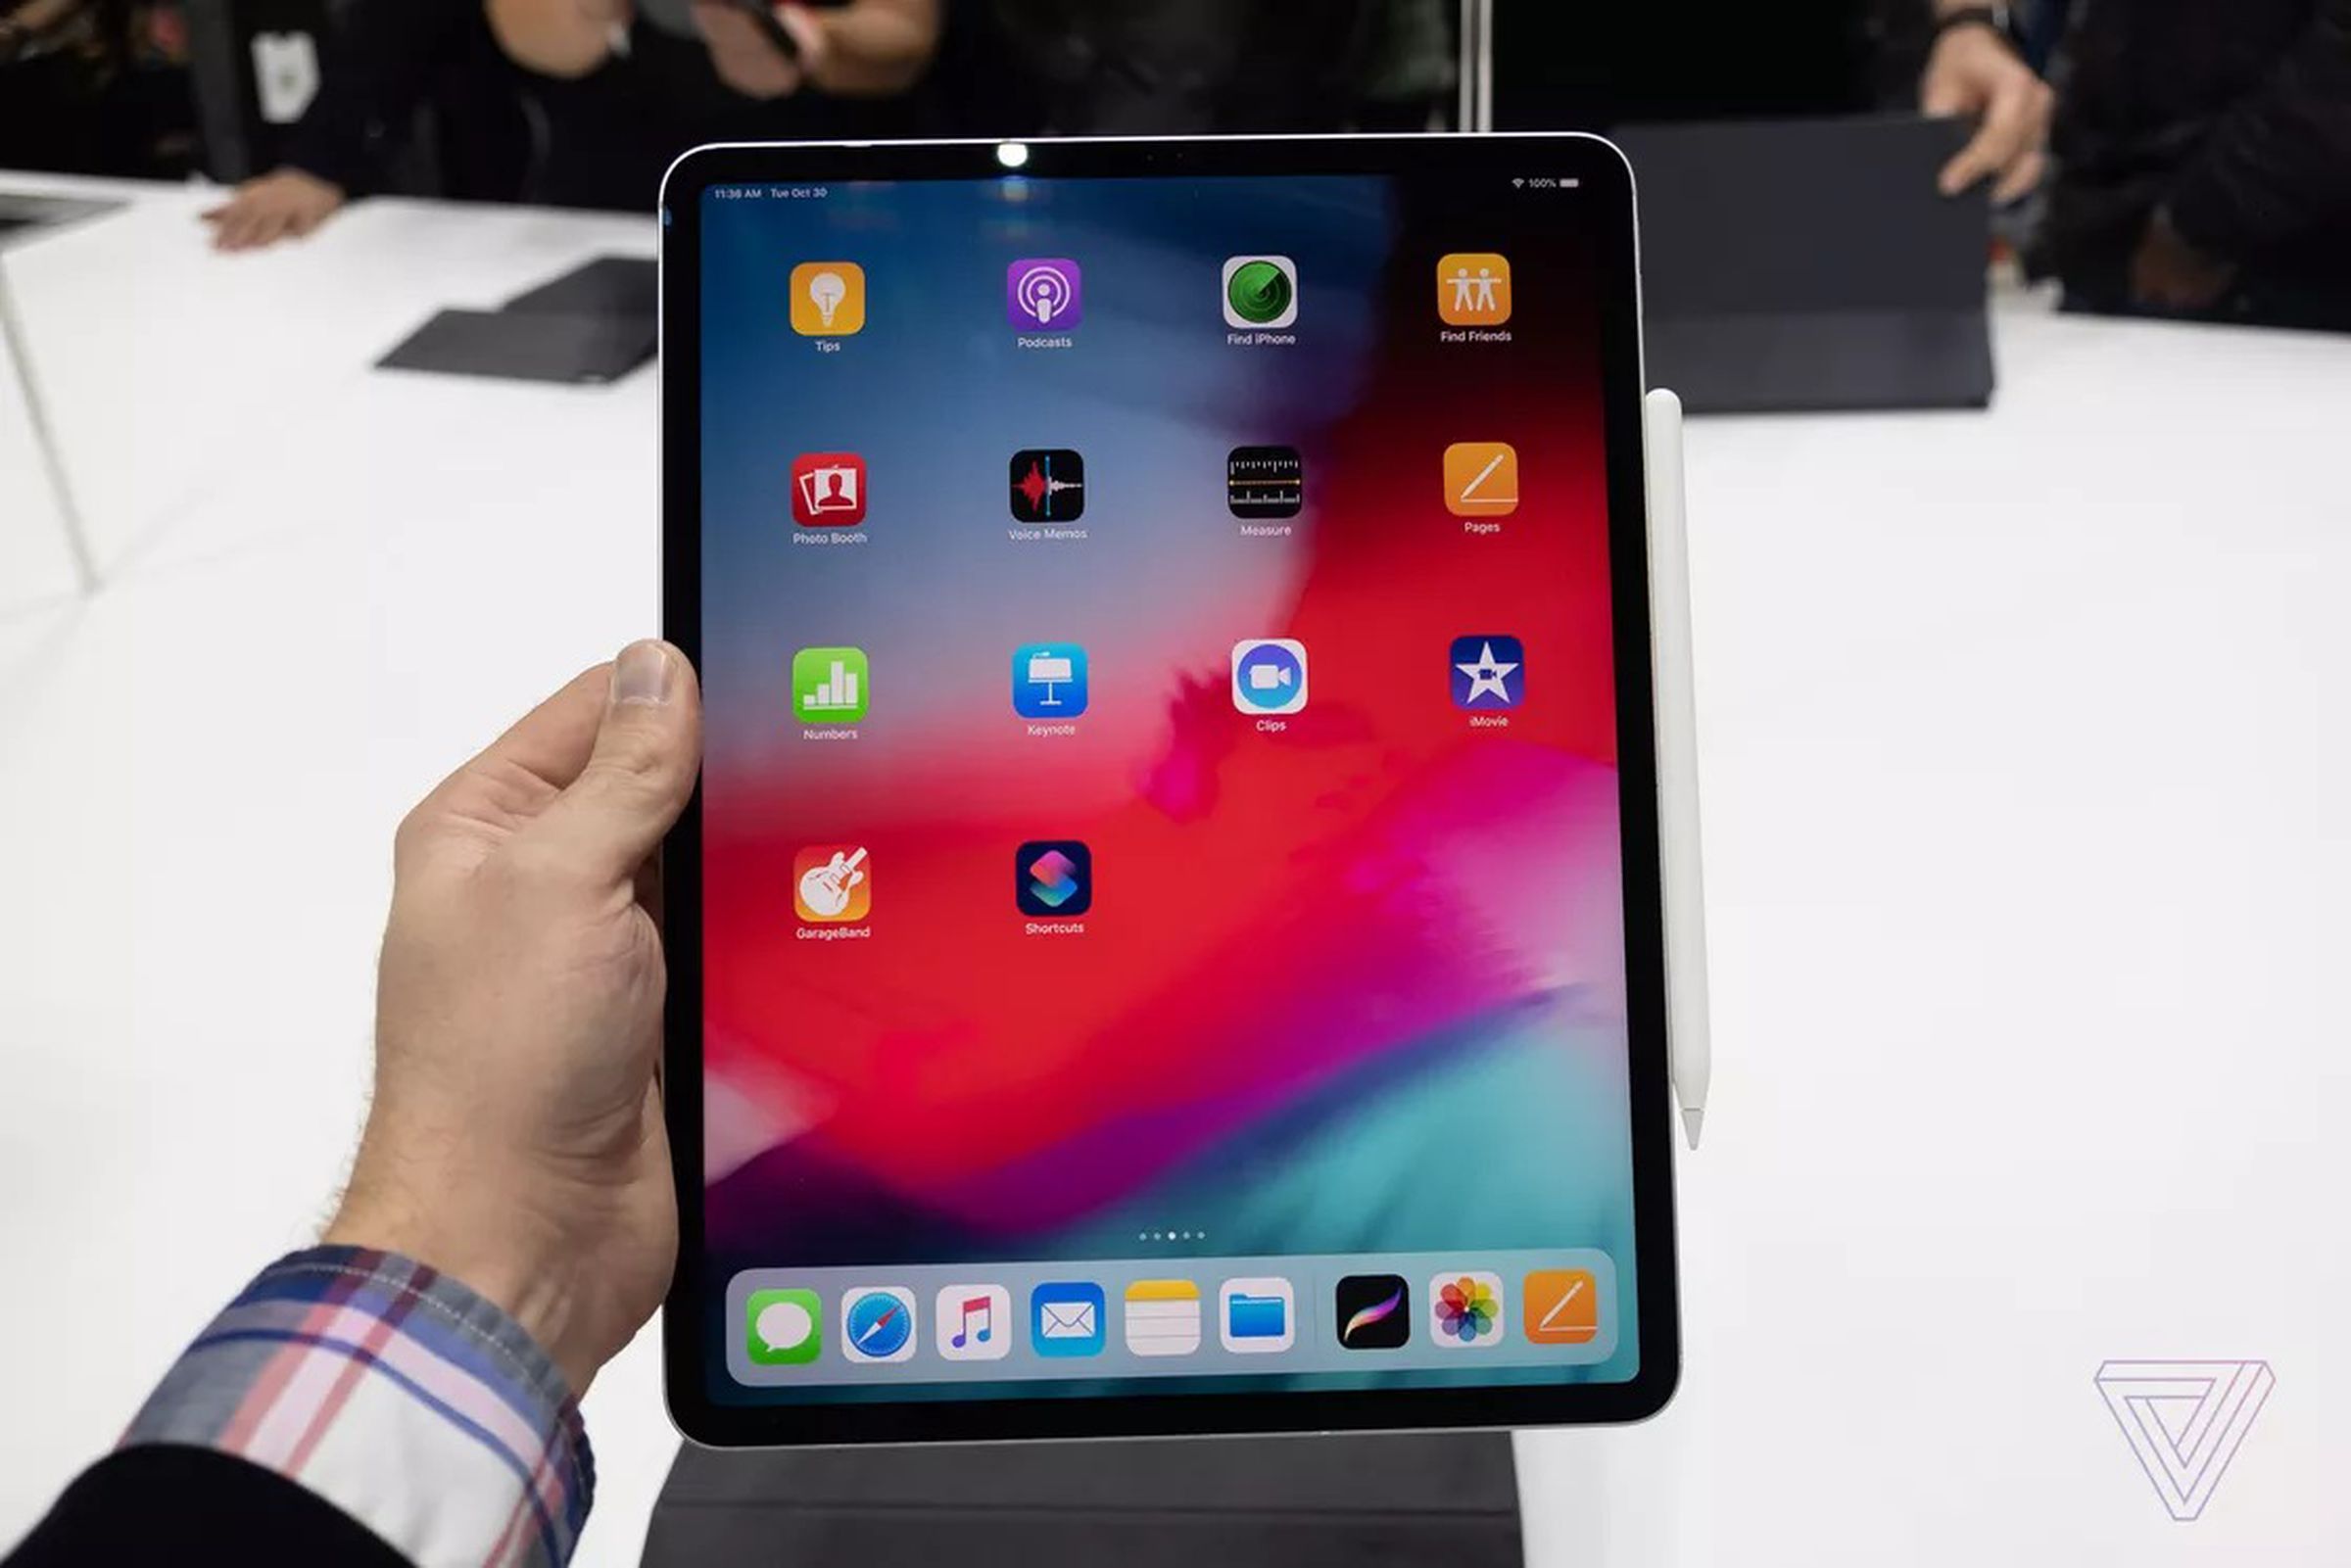 Apple’s new iPad Pro